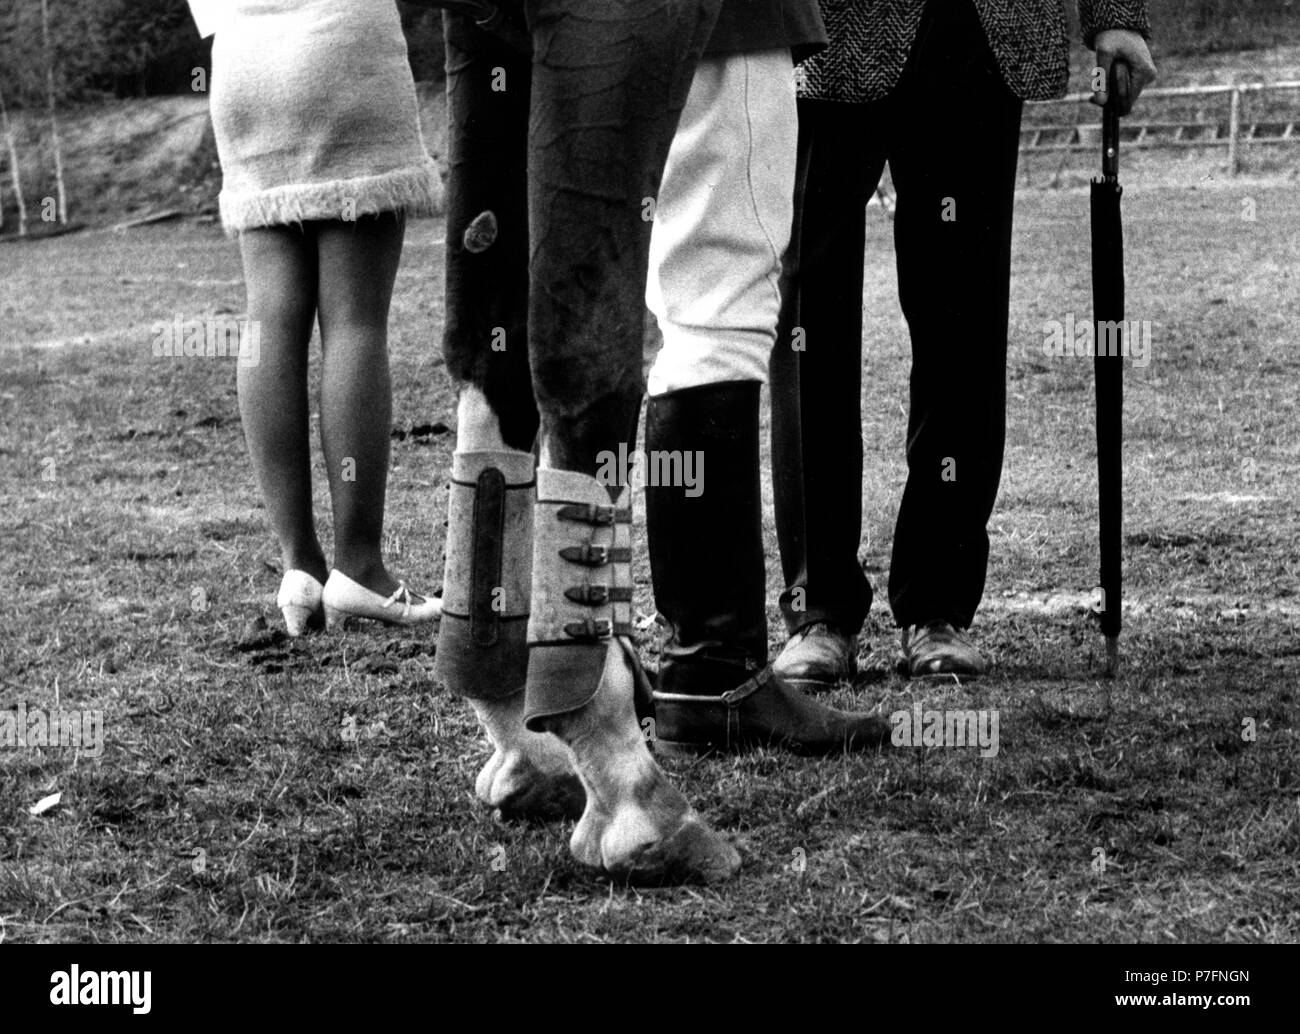 Zwei Pferd Beine und sechs menschlichen Beinen Ca. 1970 s, genaue Ort unbekannt, Tschechische Republik Stockfoto